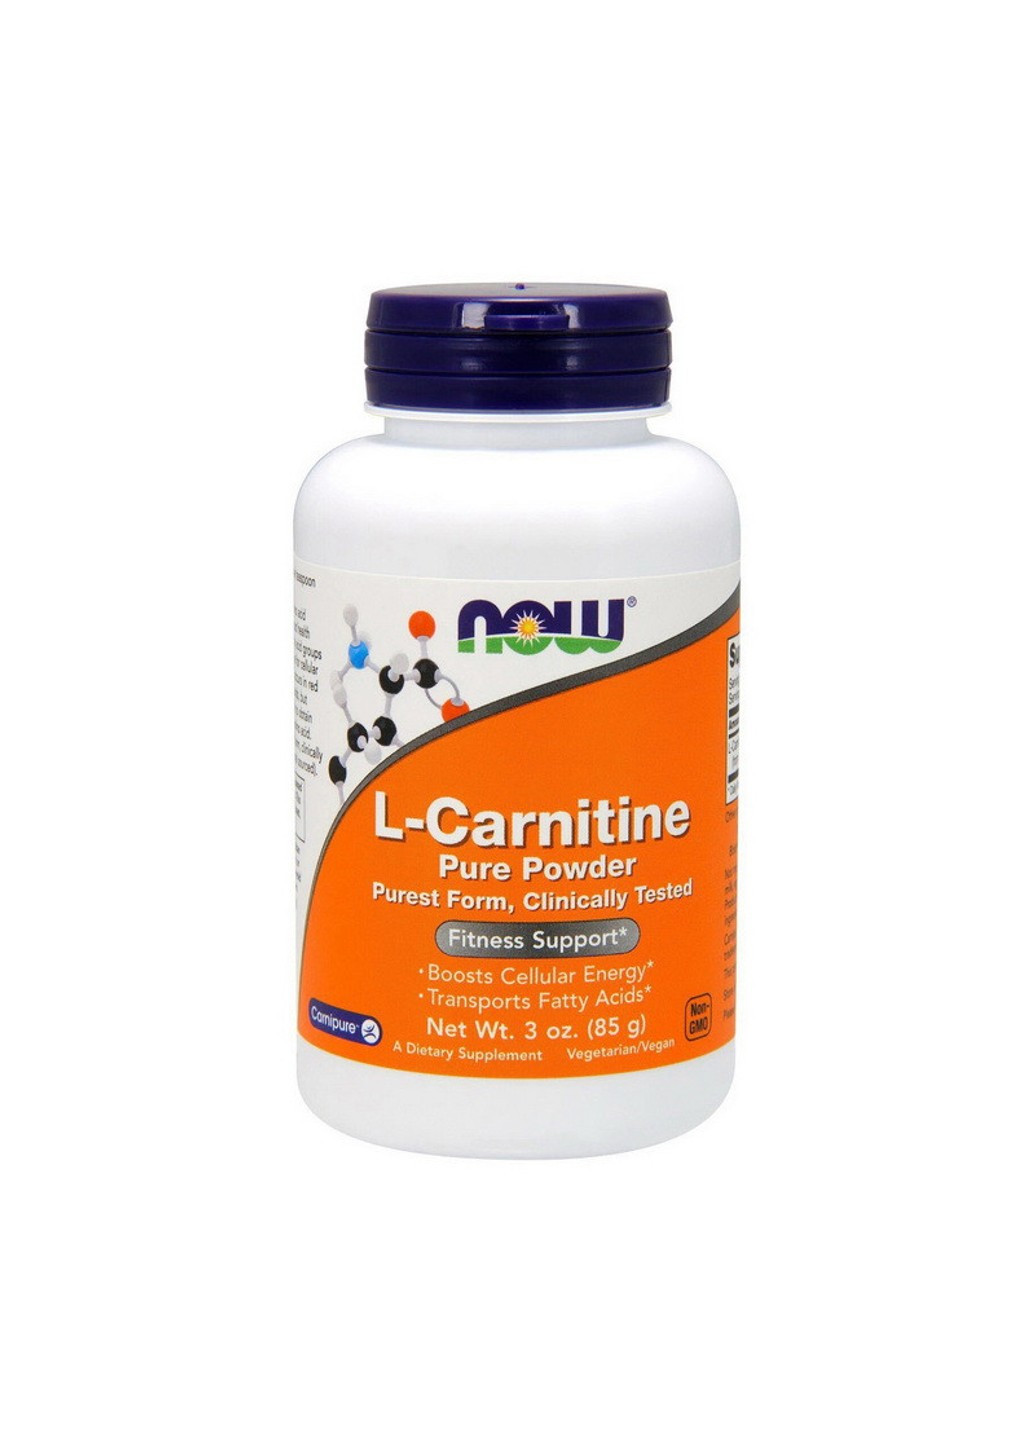 Л-карнітин L-Carnitine pure powder (85 g) нау фудс Now Foods (255362440)